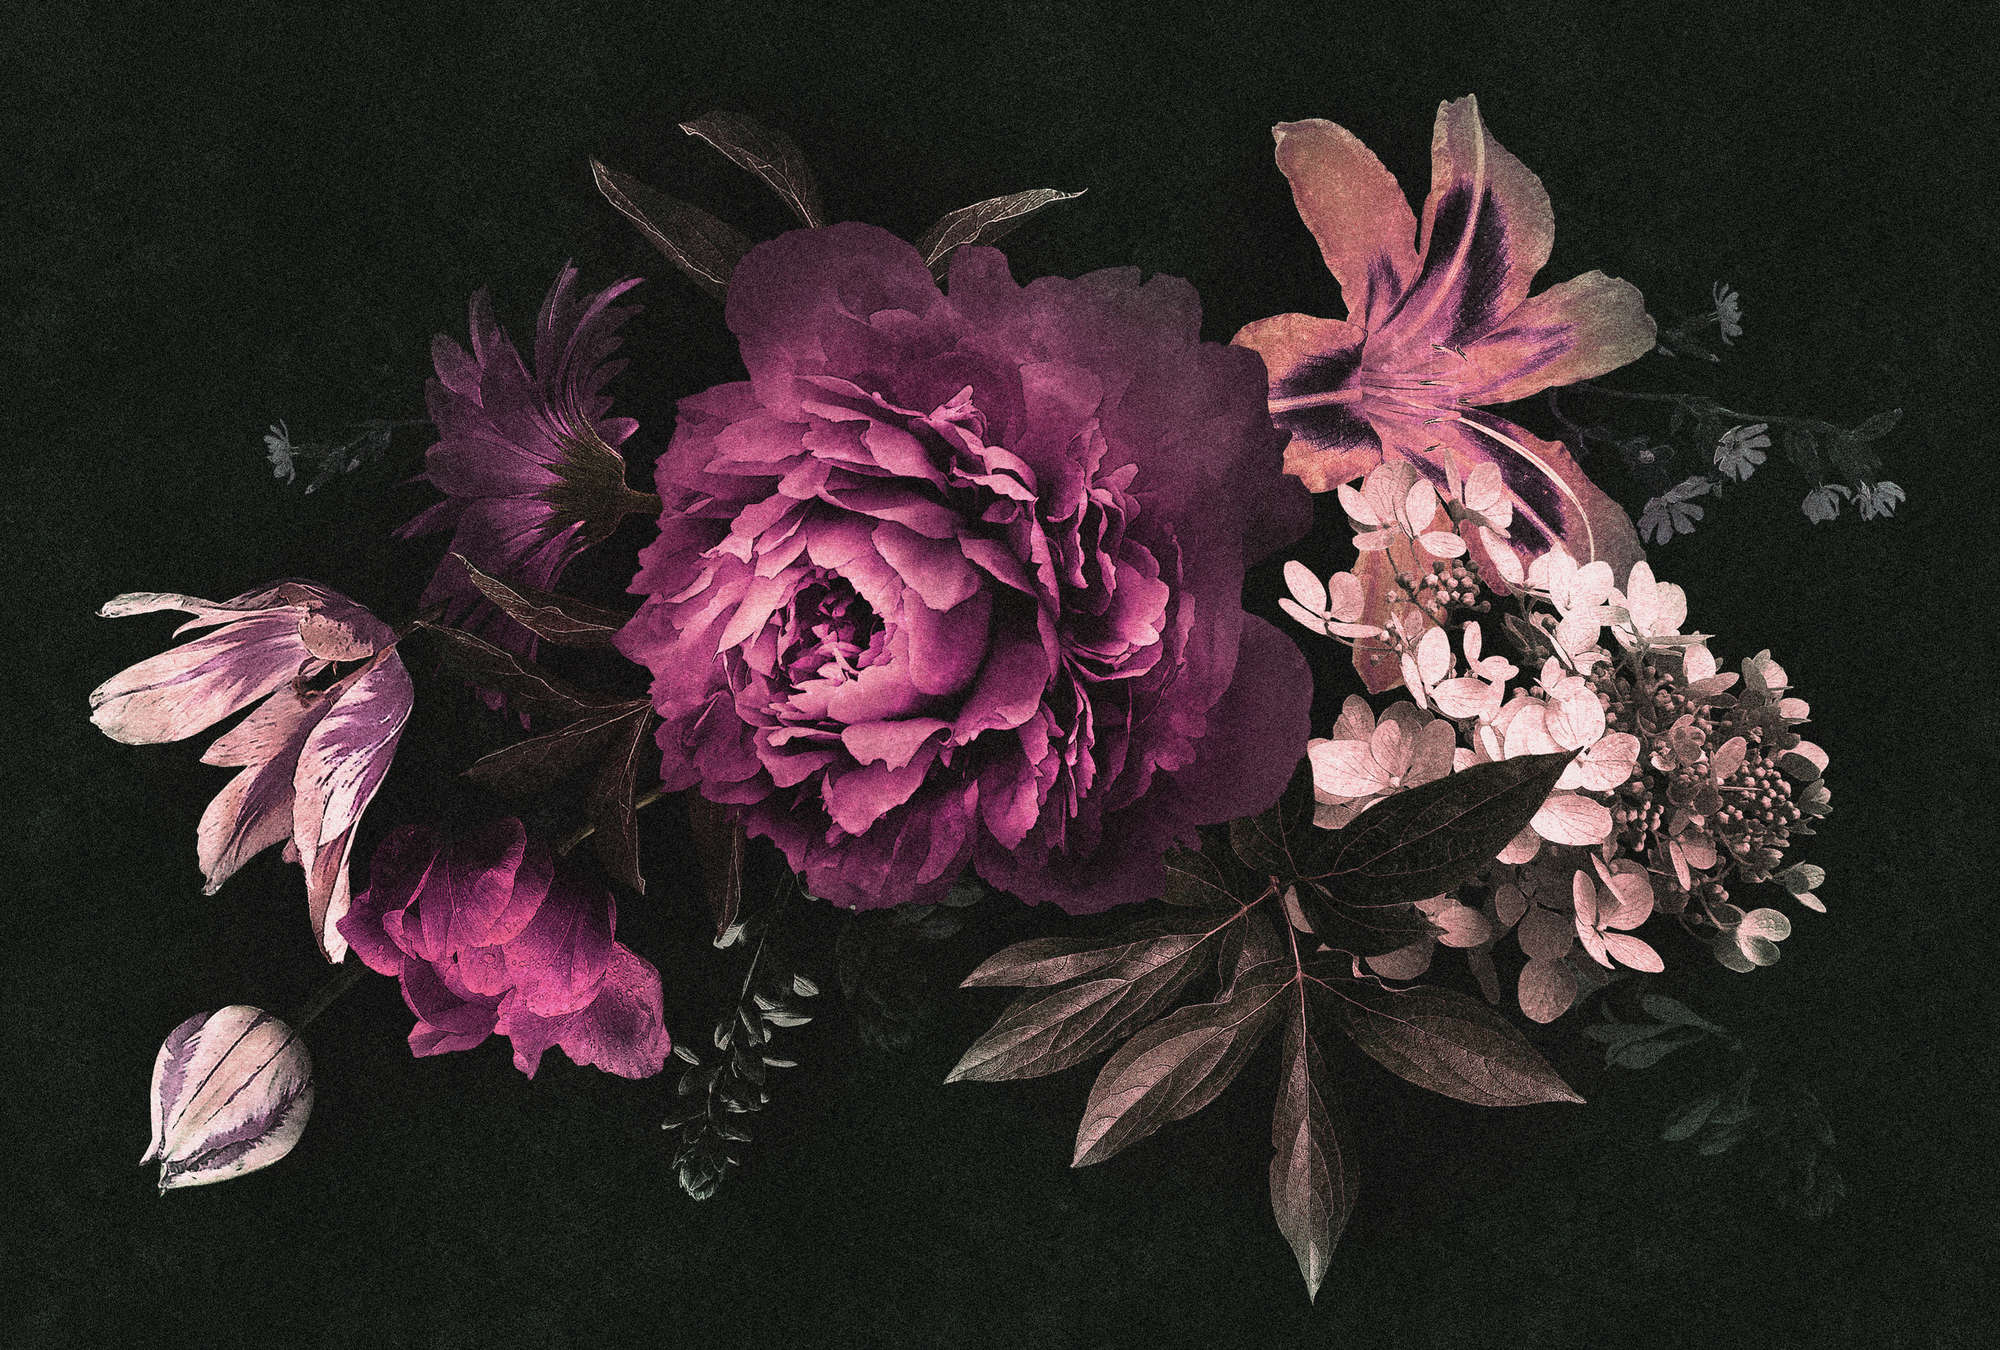             Drama queen 3 - Papier peint bouquet de fleurs romantique - structure en carton - rose, noir | nacré intissé lisse
        